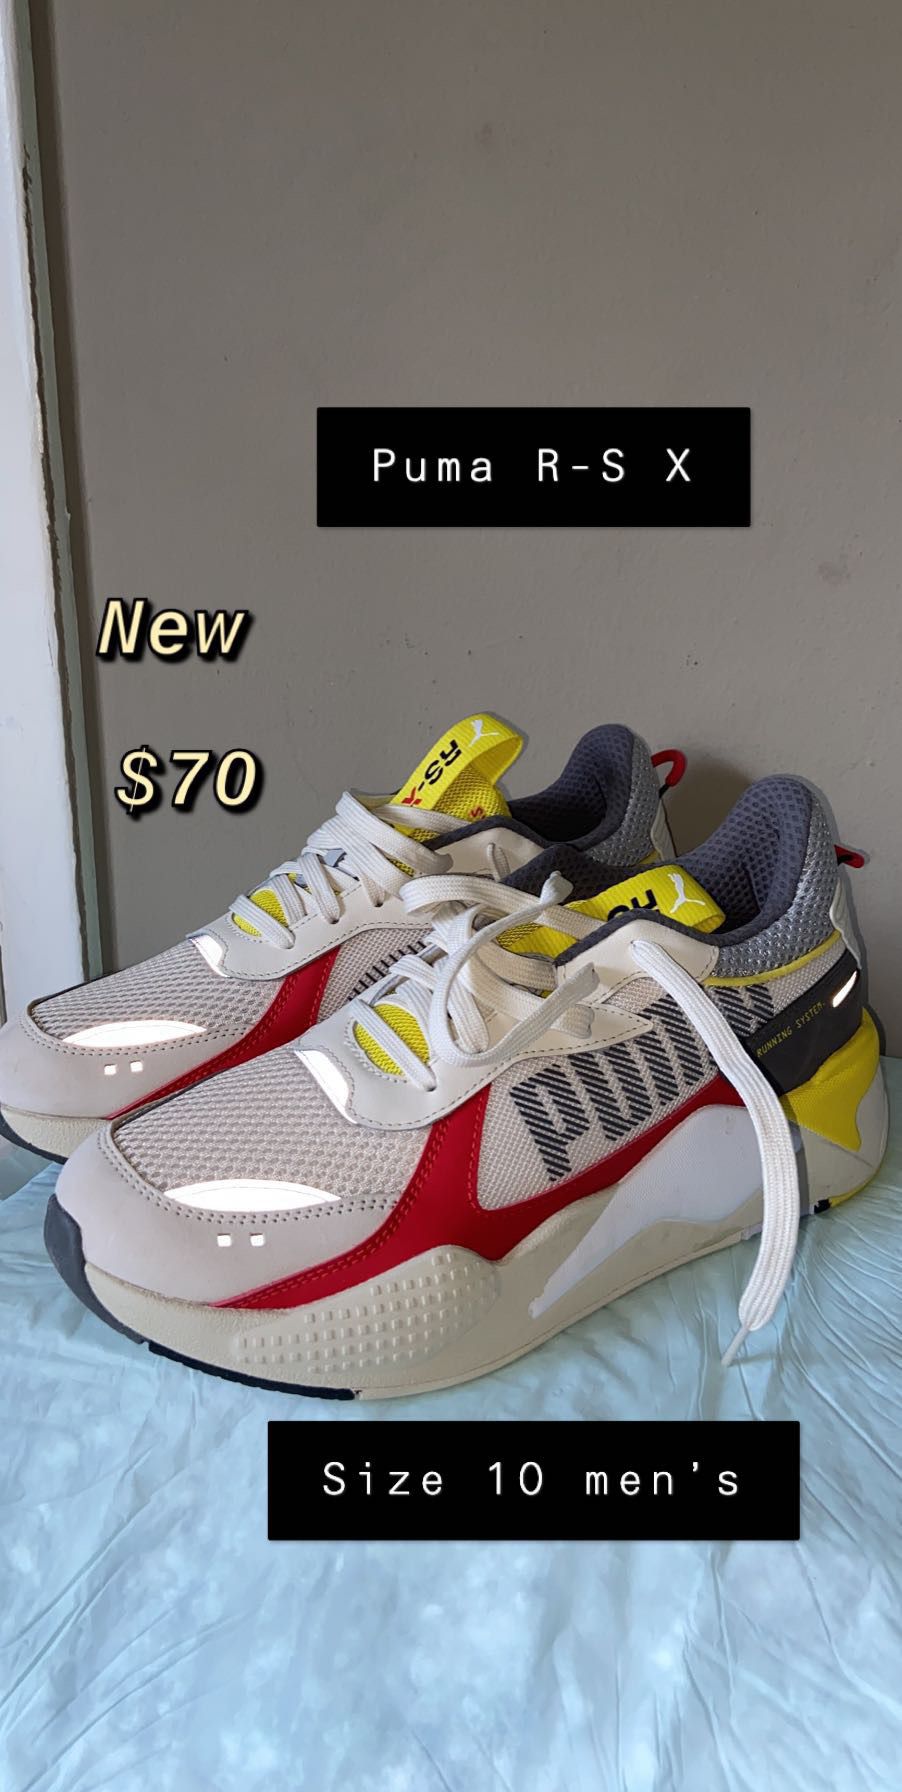 Puma R-S X